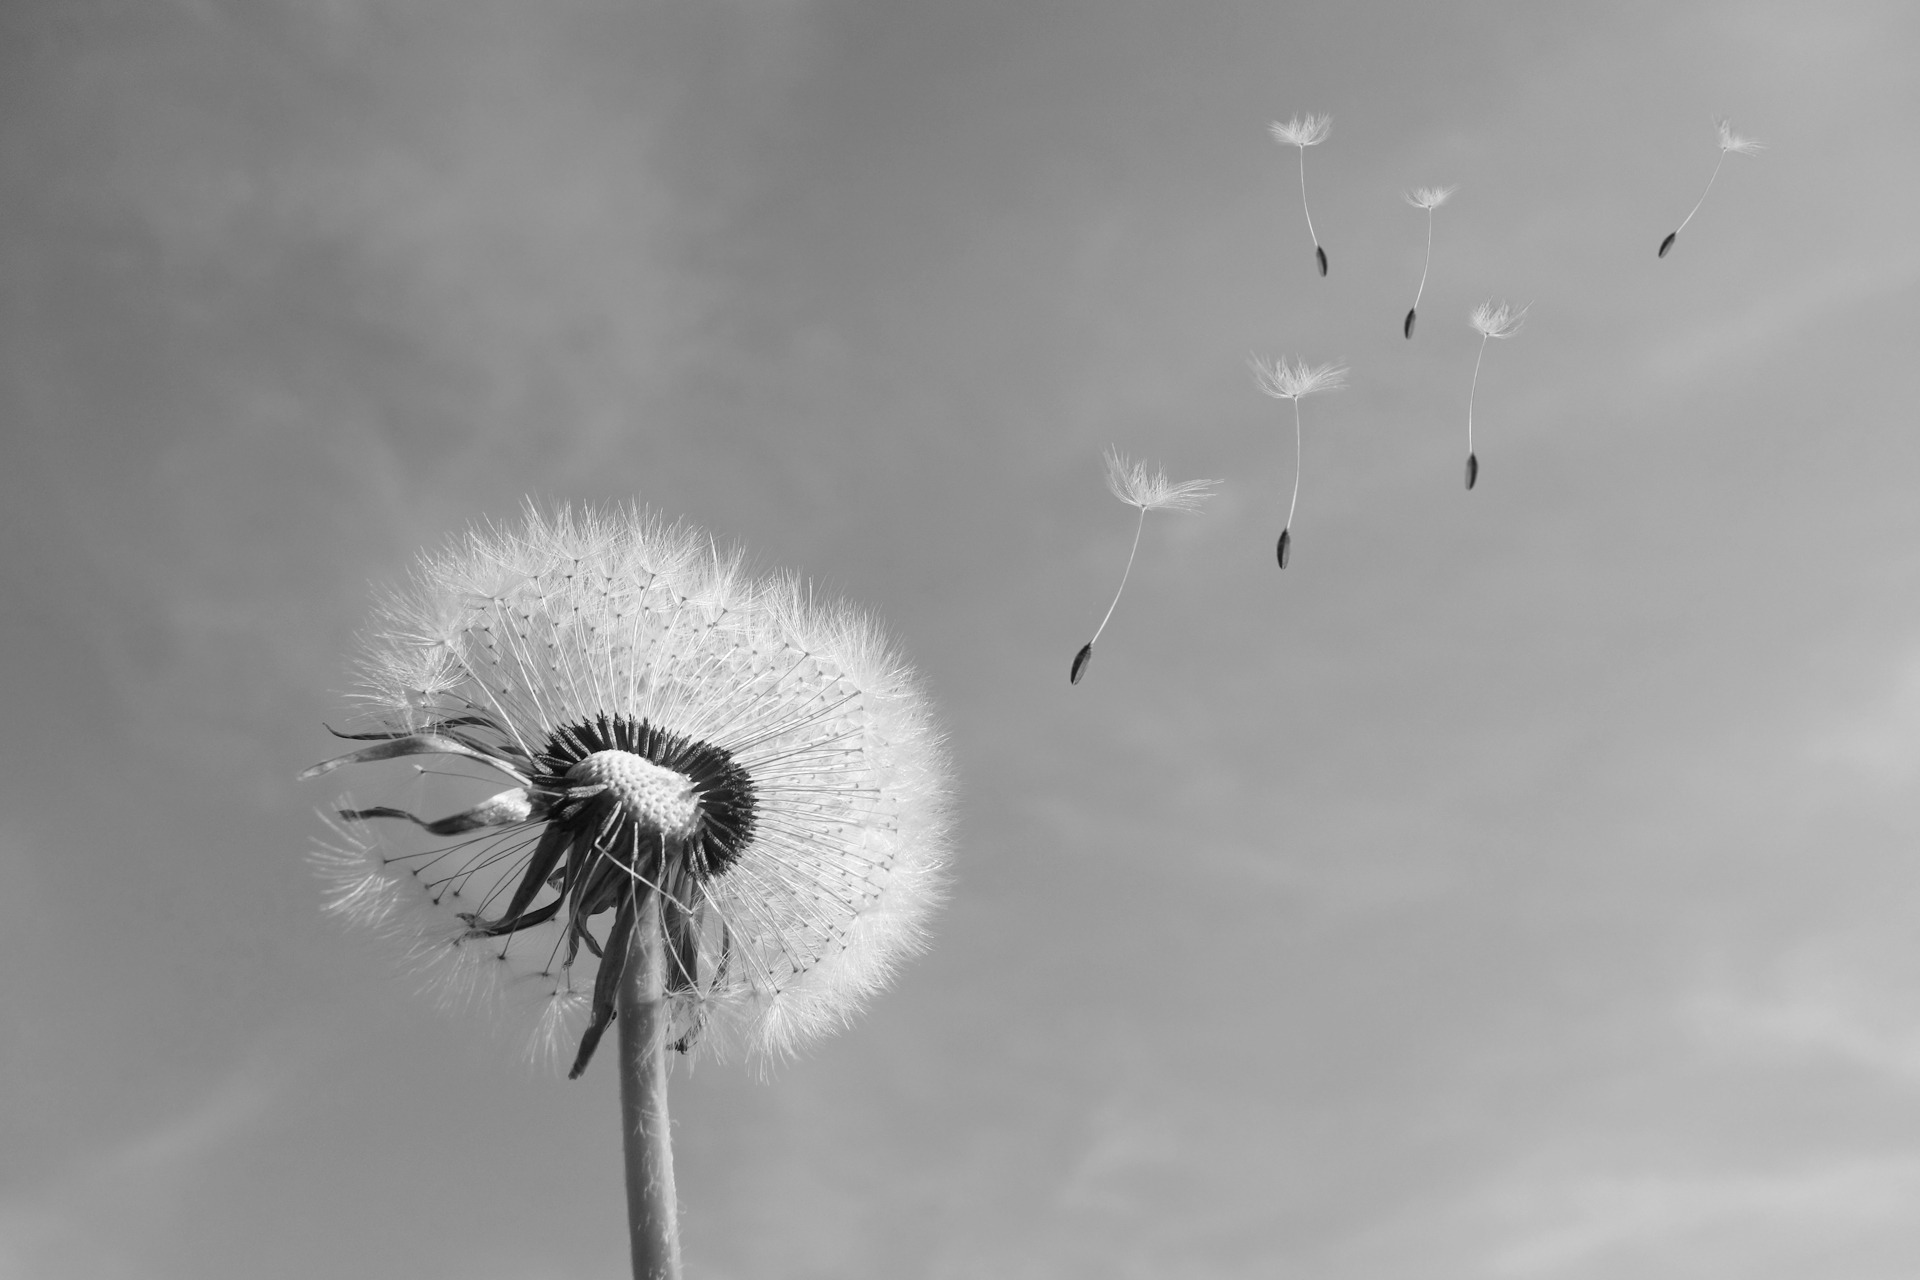 一张蒲公英降落伞随风飞舞的黑白照片。